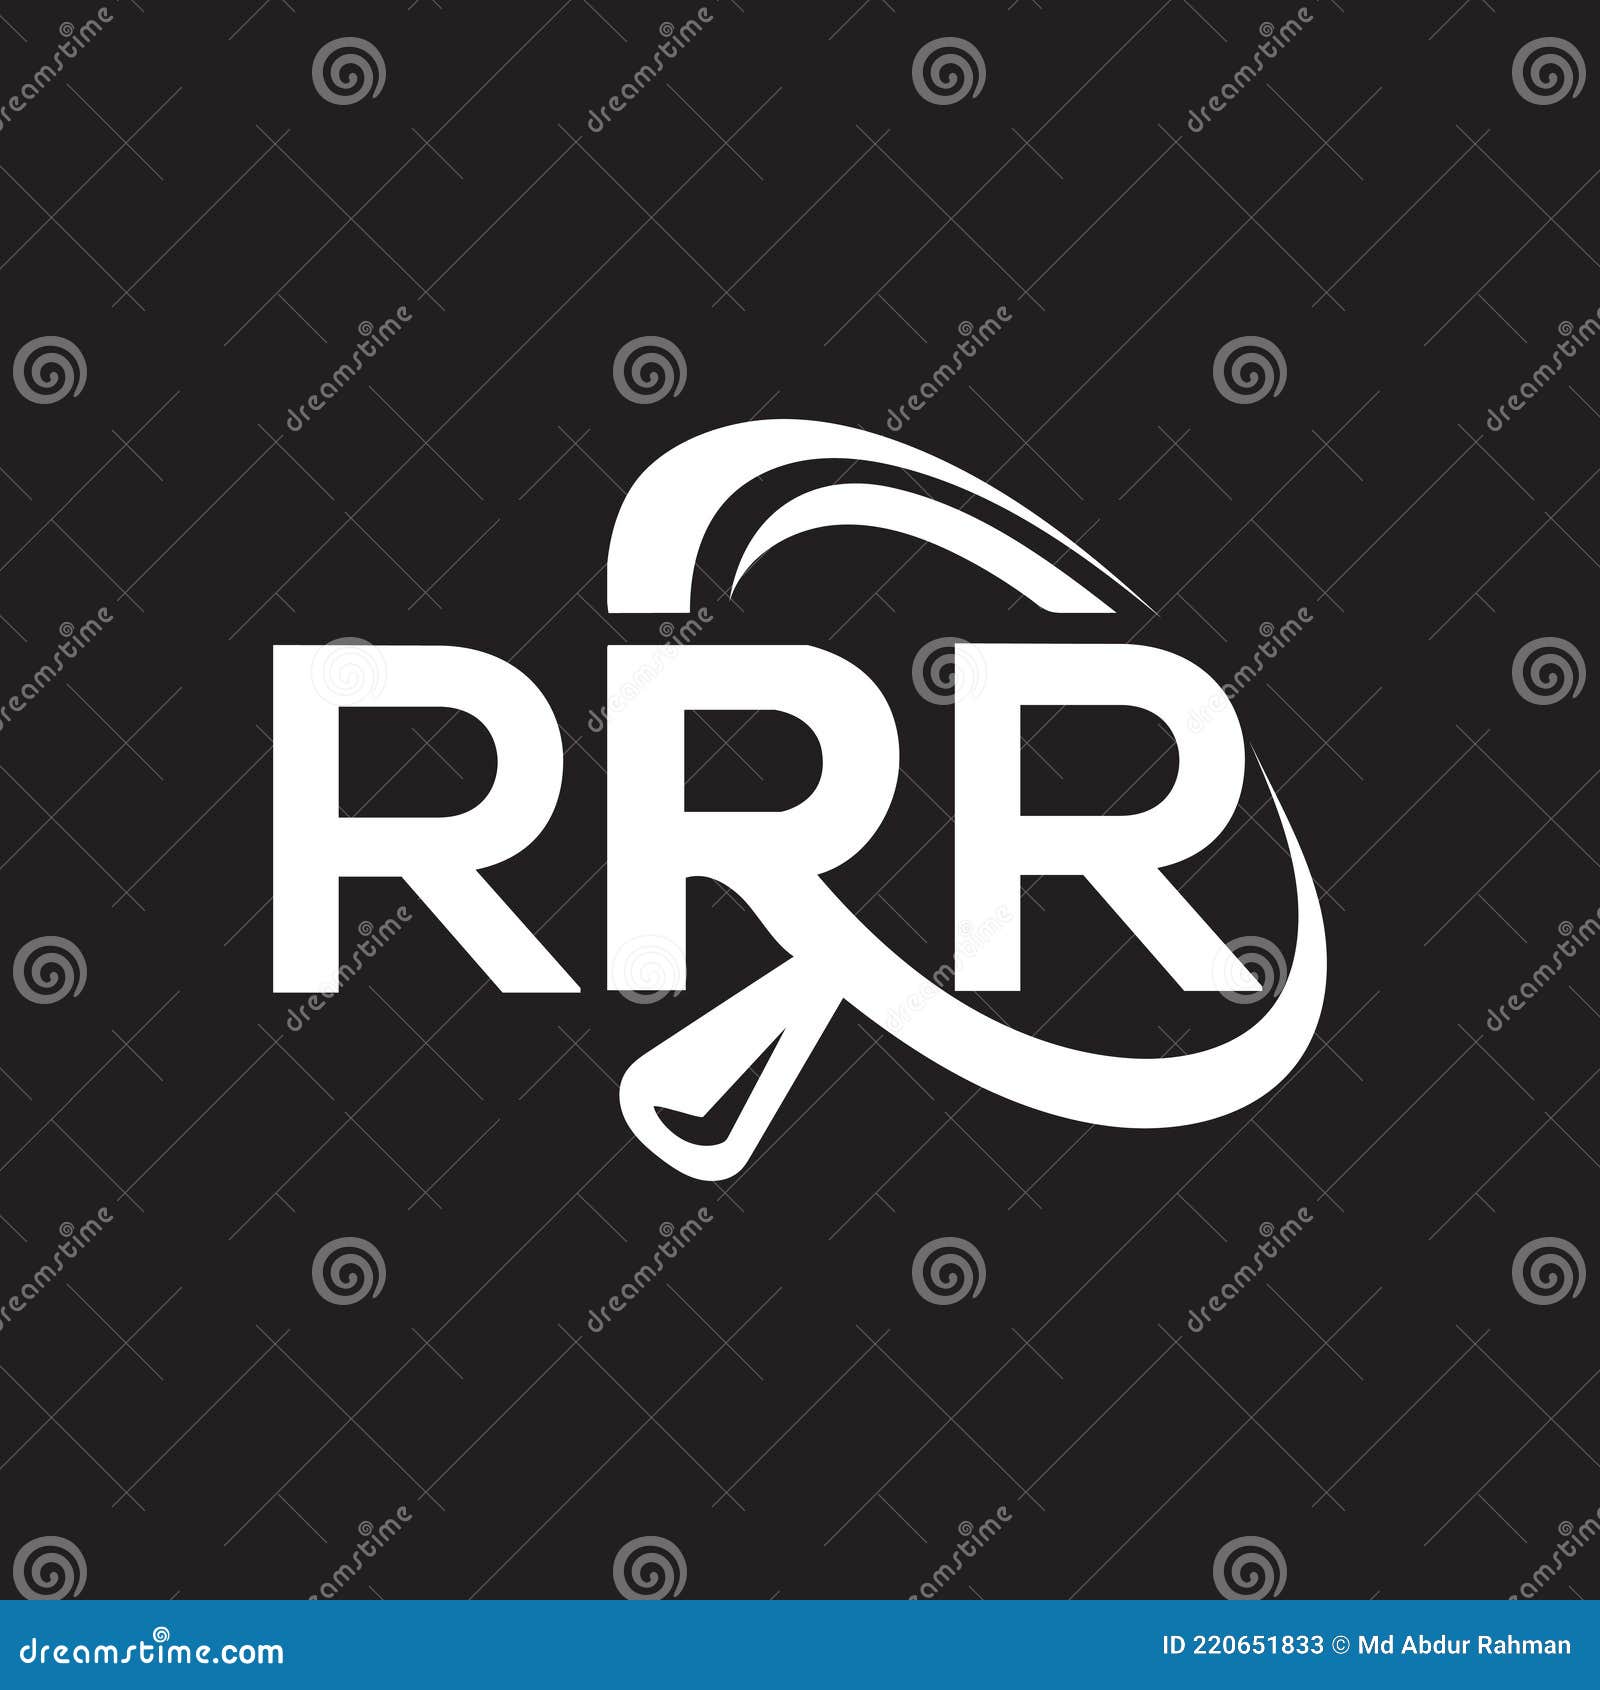 Rrr Stock Illustrations – 144 Rrr Stock Illustrations, Vectors